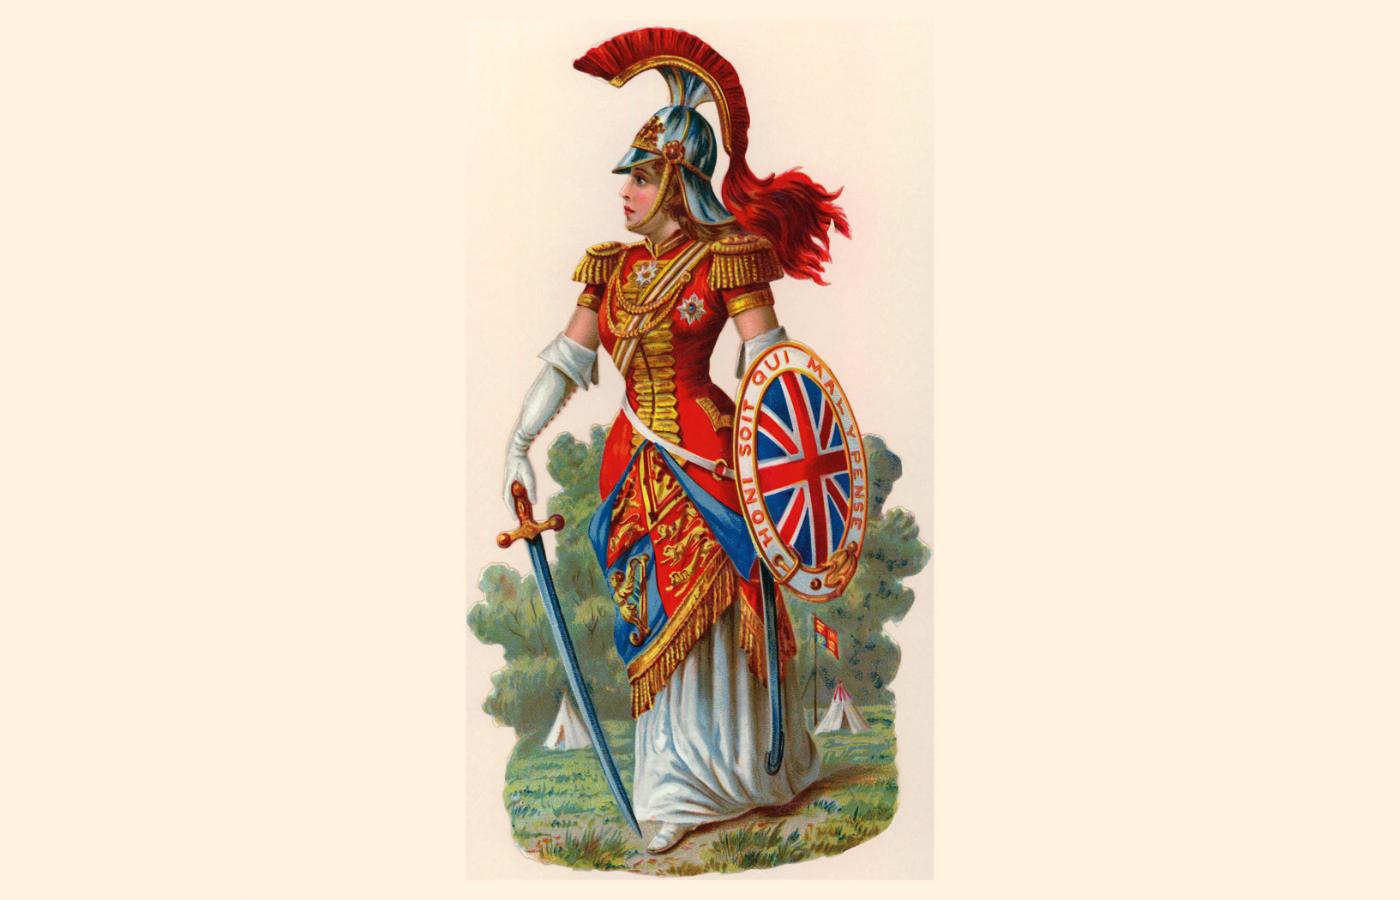 Brytania w stroju wojskowym; ok. 1840 r.